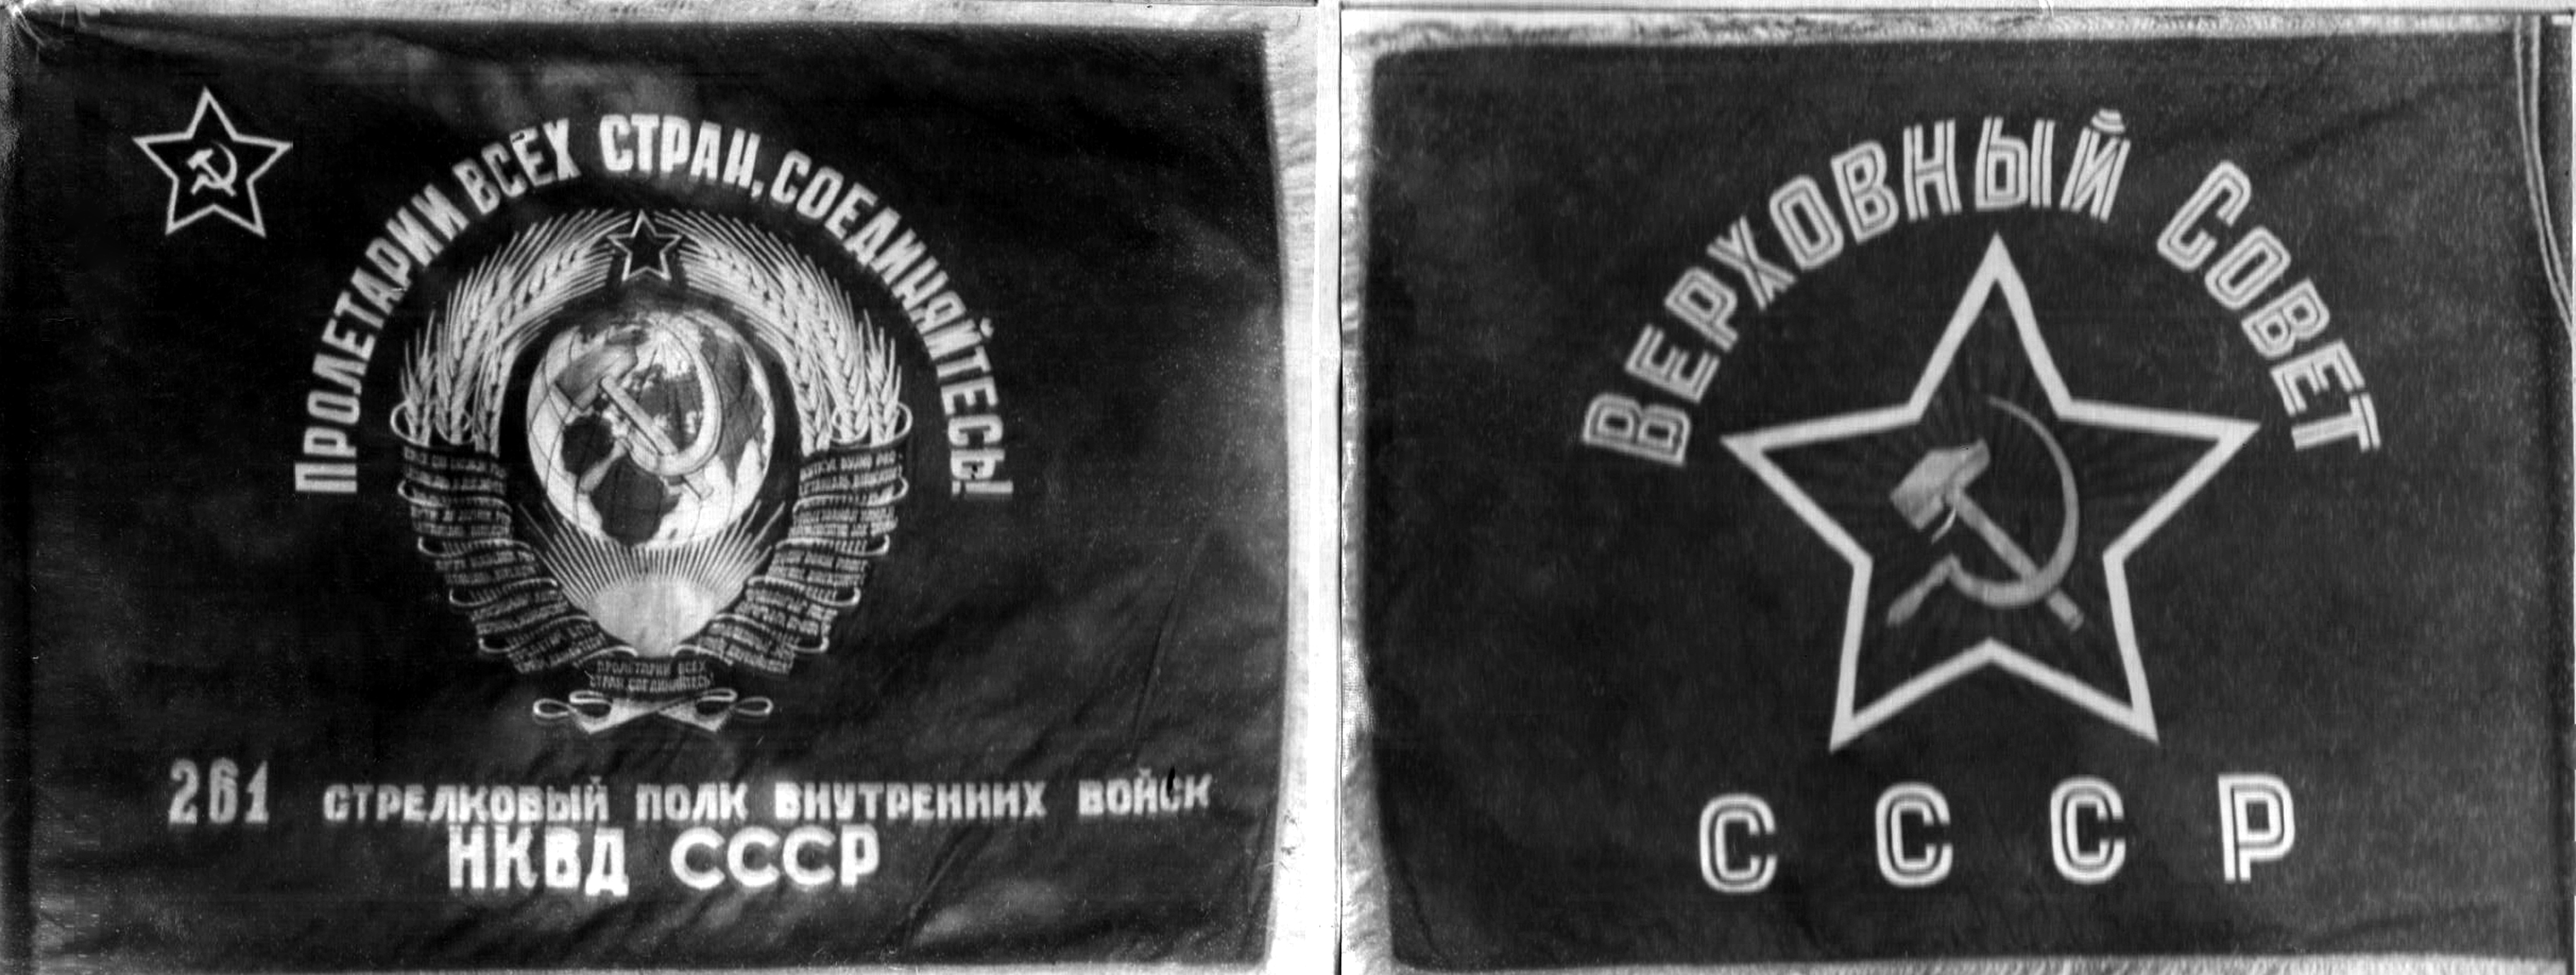 Войска НКВД СССР В годы Великой Отечественной войны